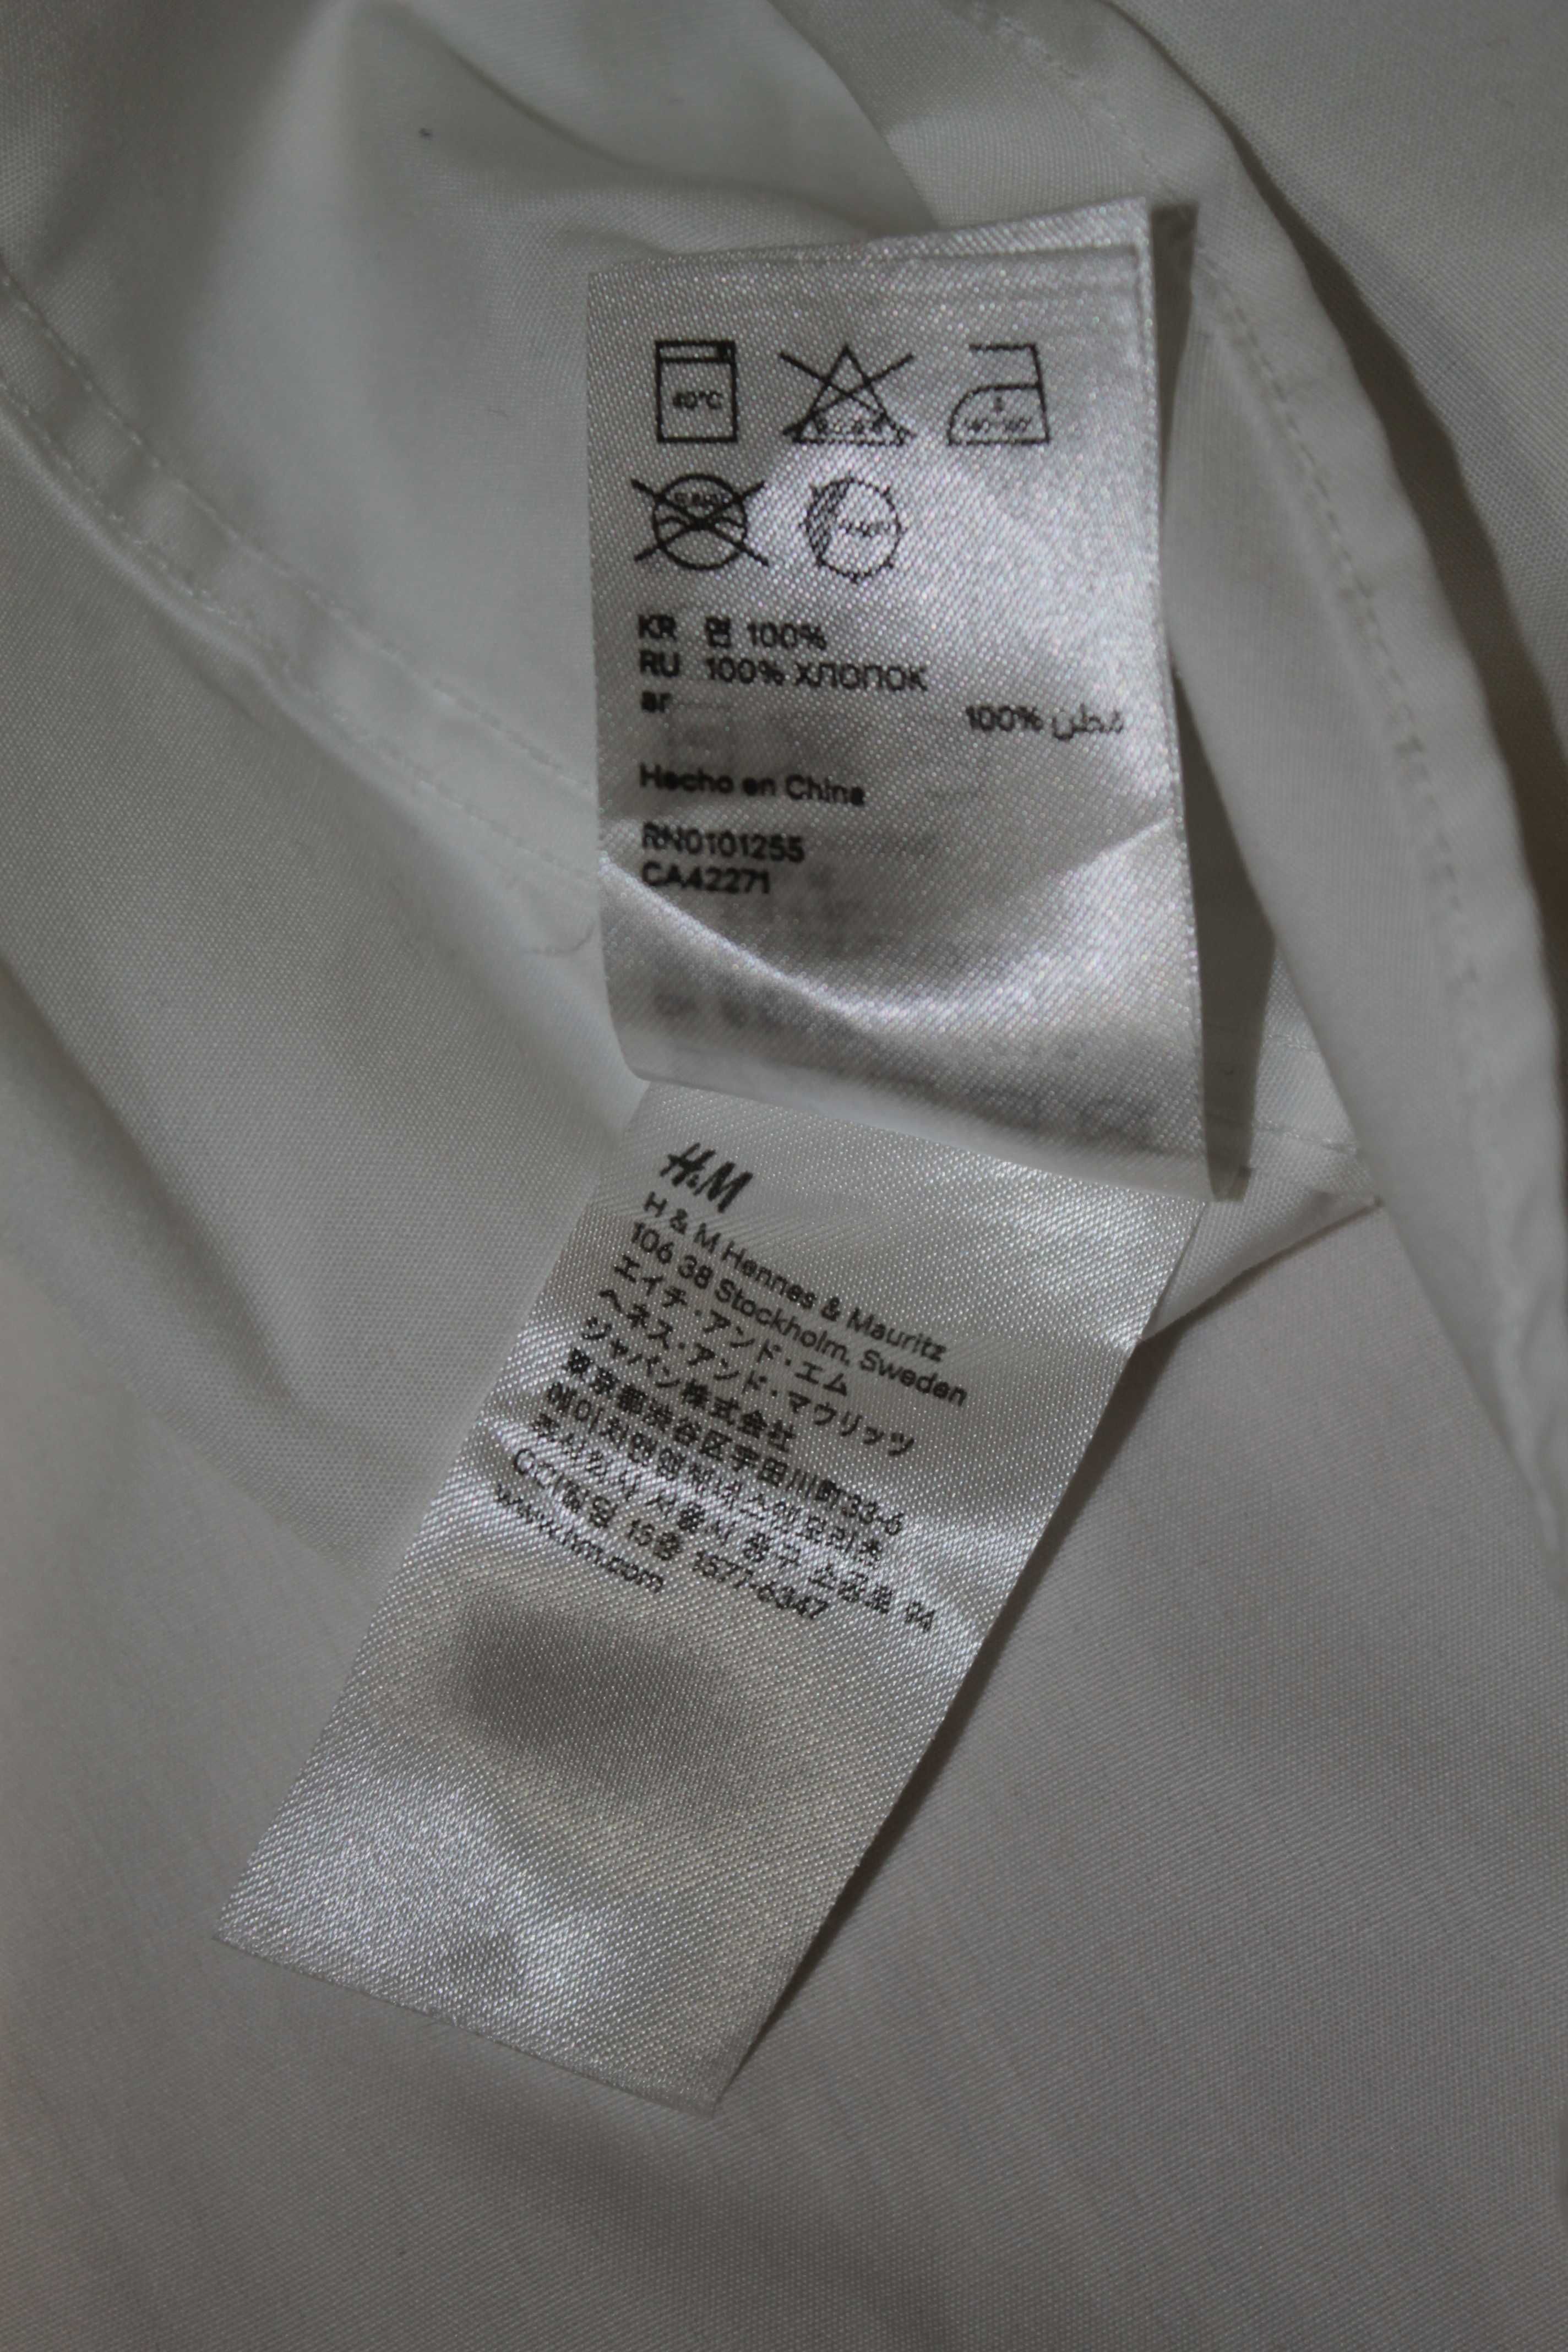 H&m xl чоловіча сорочка батального батал великого розміру біла